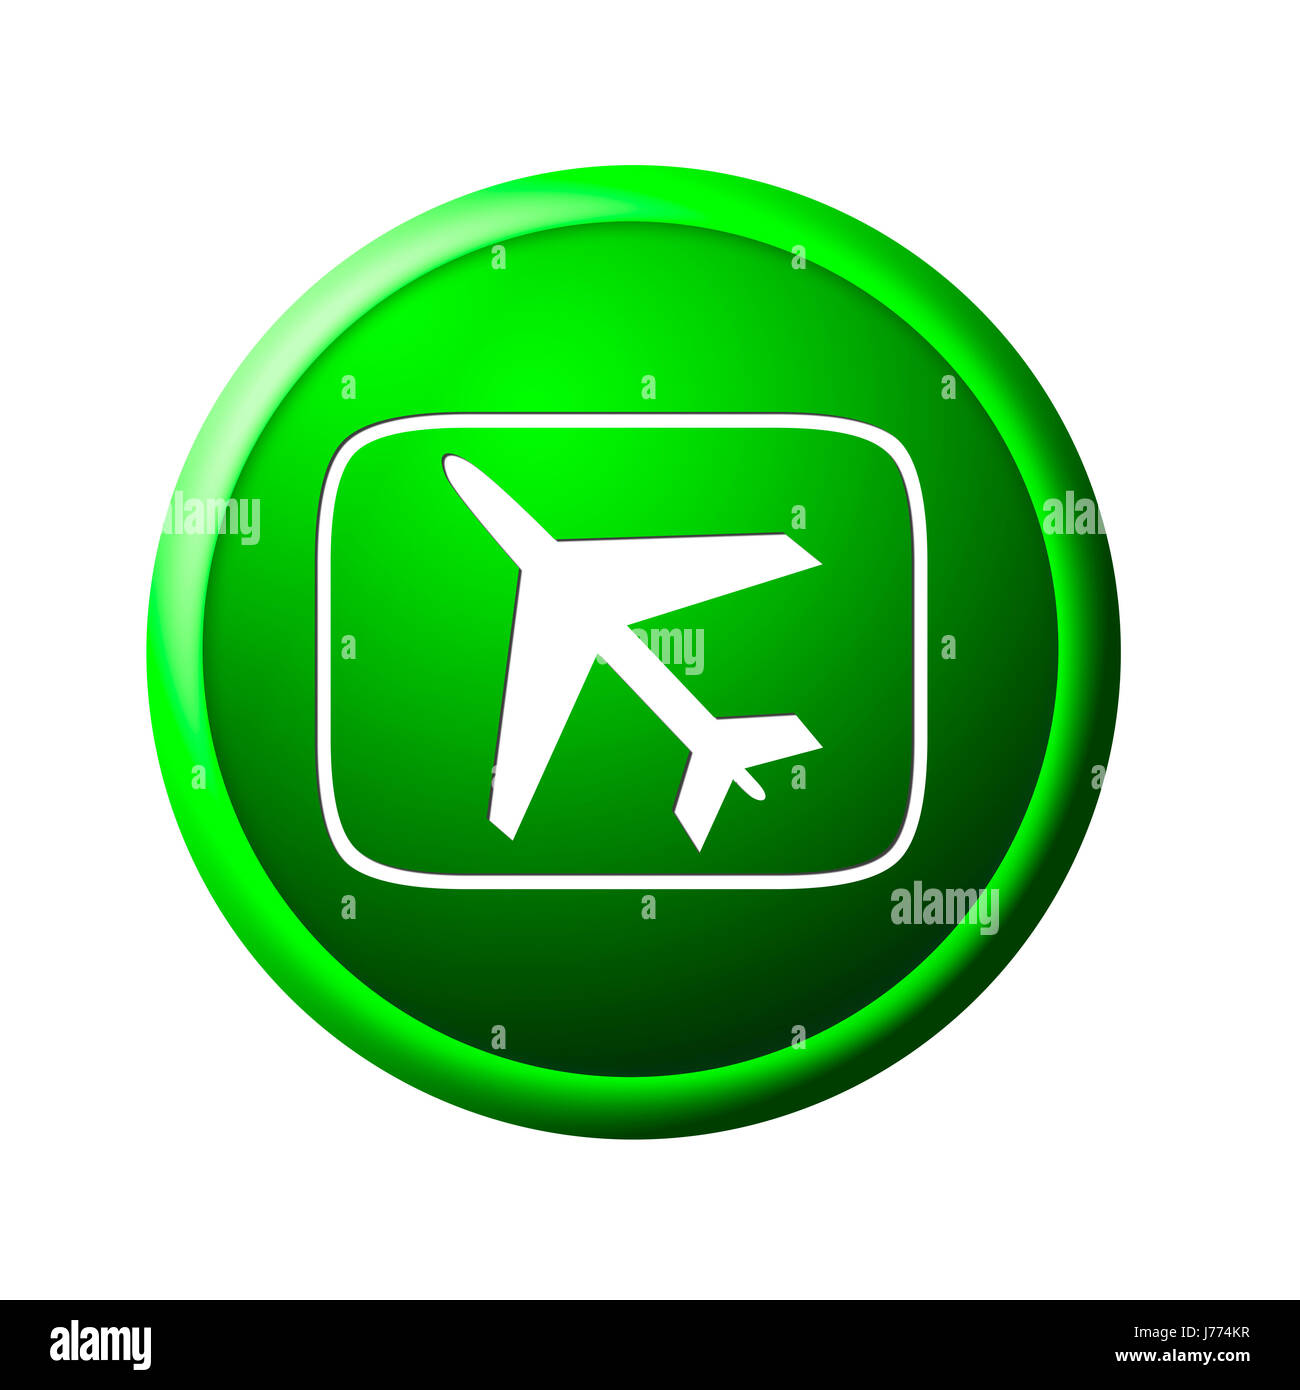 Botón de ala del tráfico aéreo de aviación la prohibición de volar aviones avión avión Foto de stock